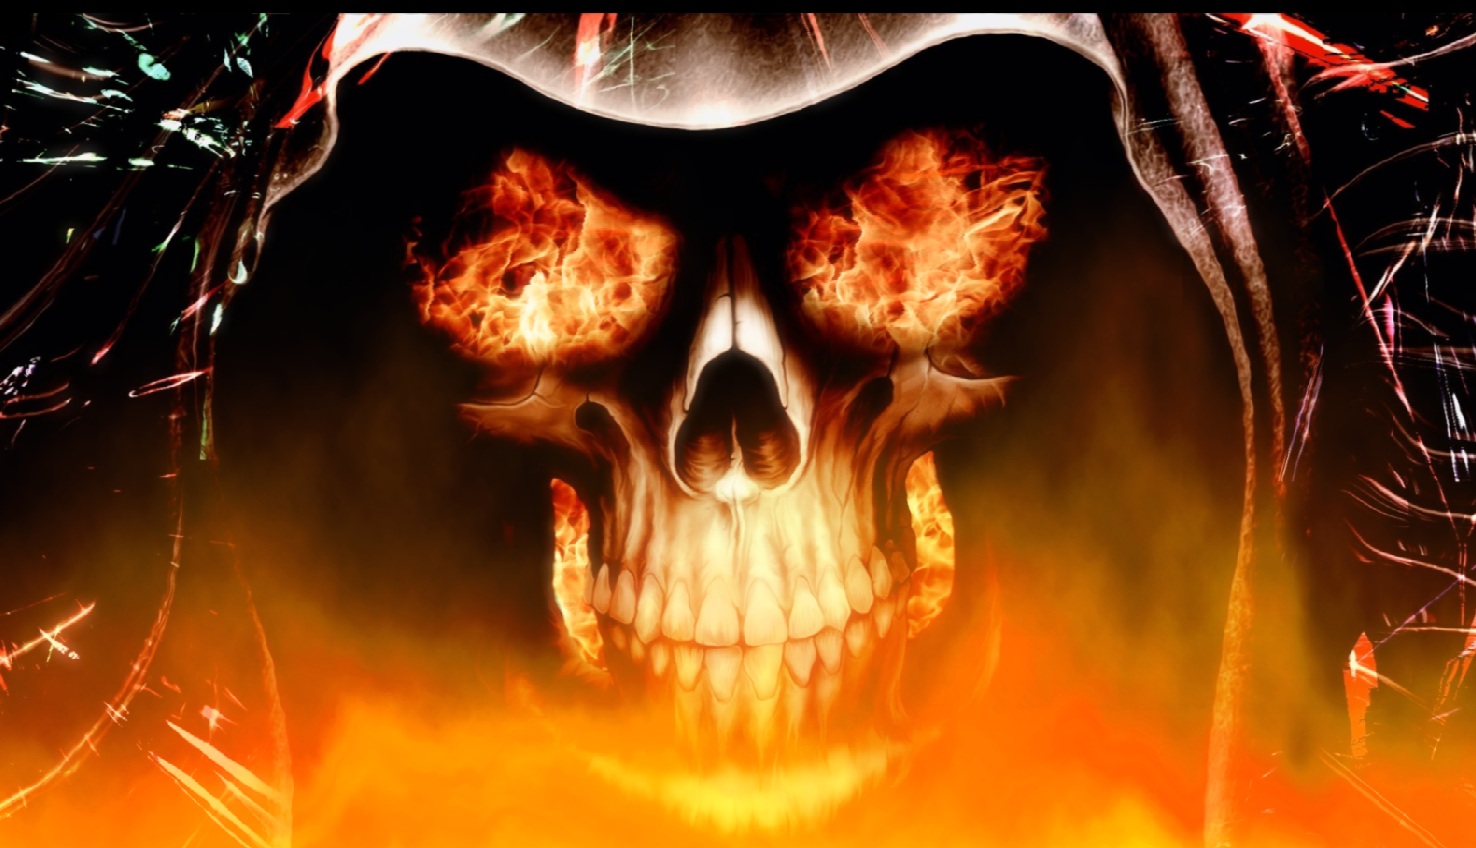 Download Fire Skull Animated Wallpaper DesktopAnimatedcom 1476x848